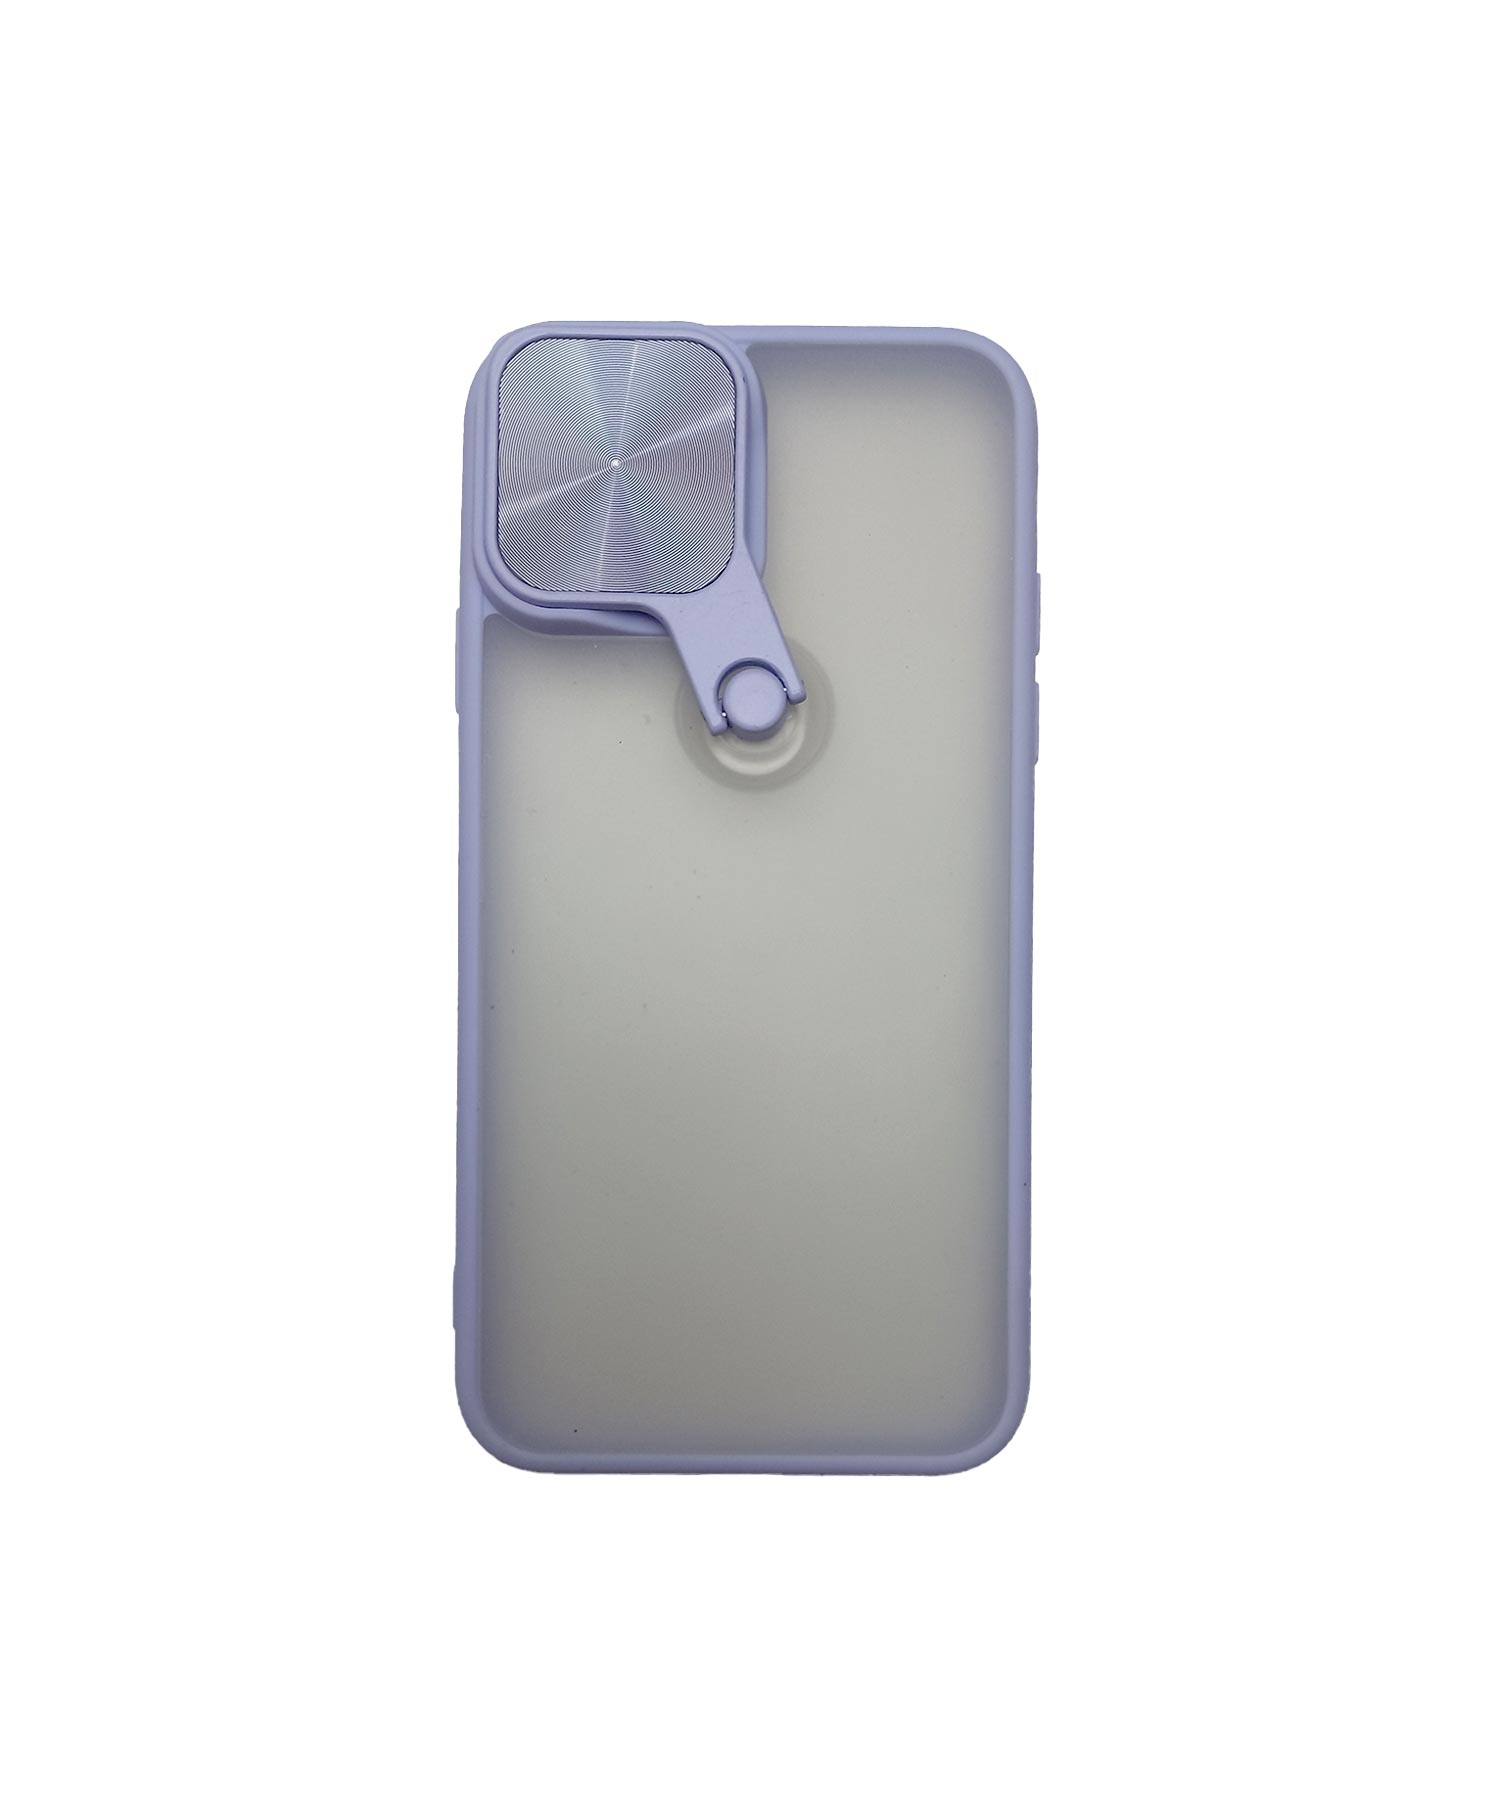 قاب PC مات آینه دار گوشی موبایل آیفون Iphone 11 Pro Max